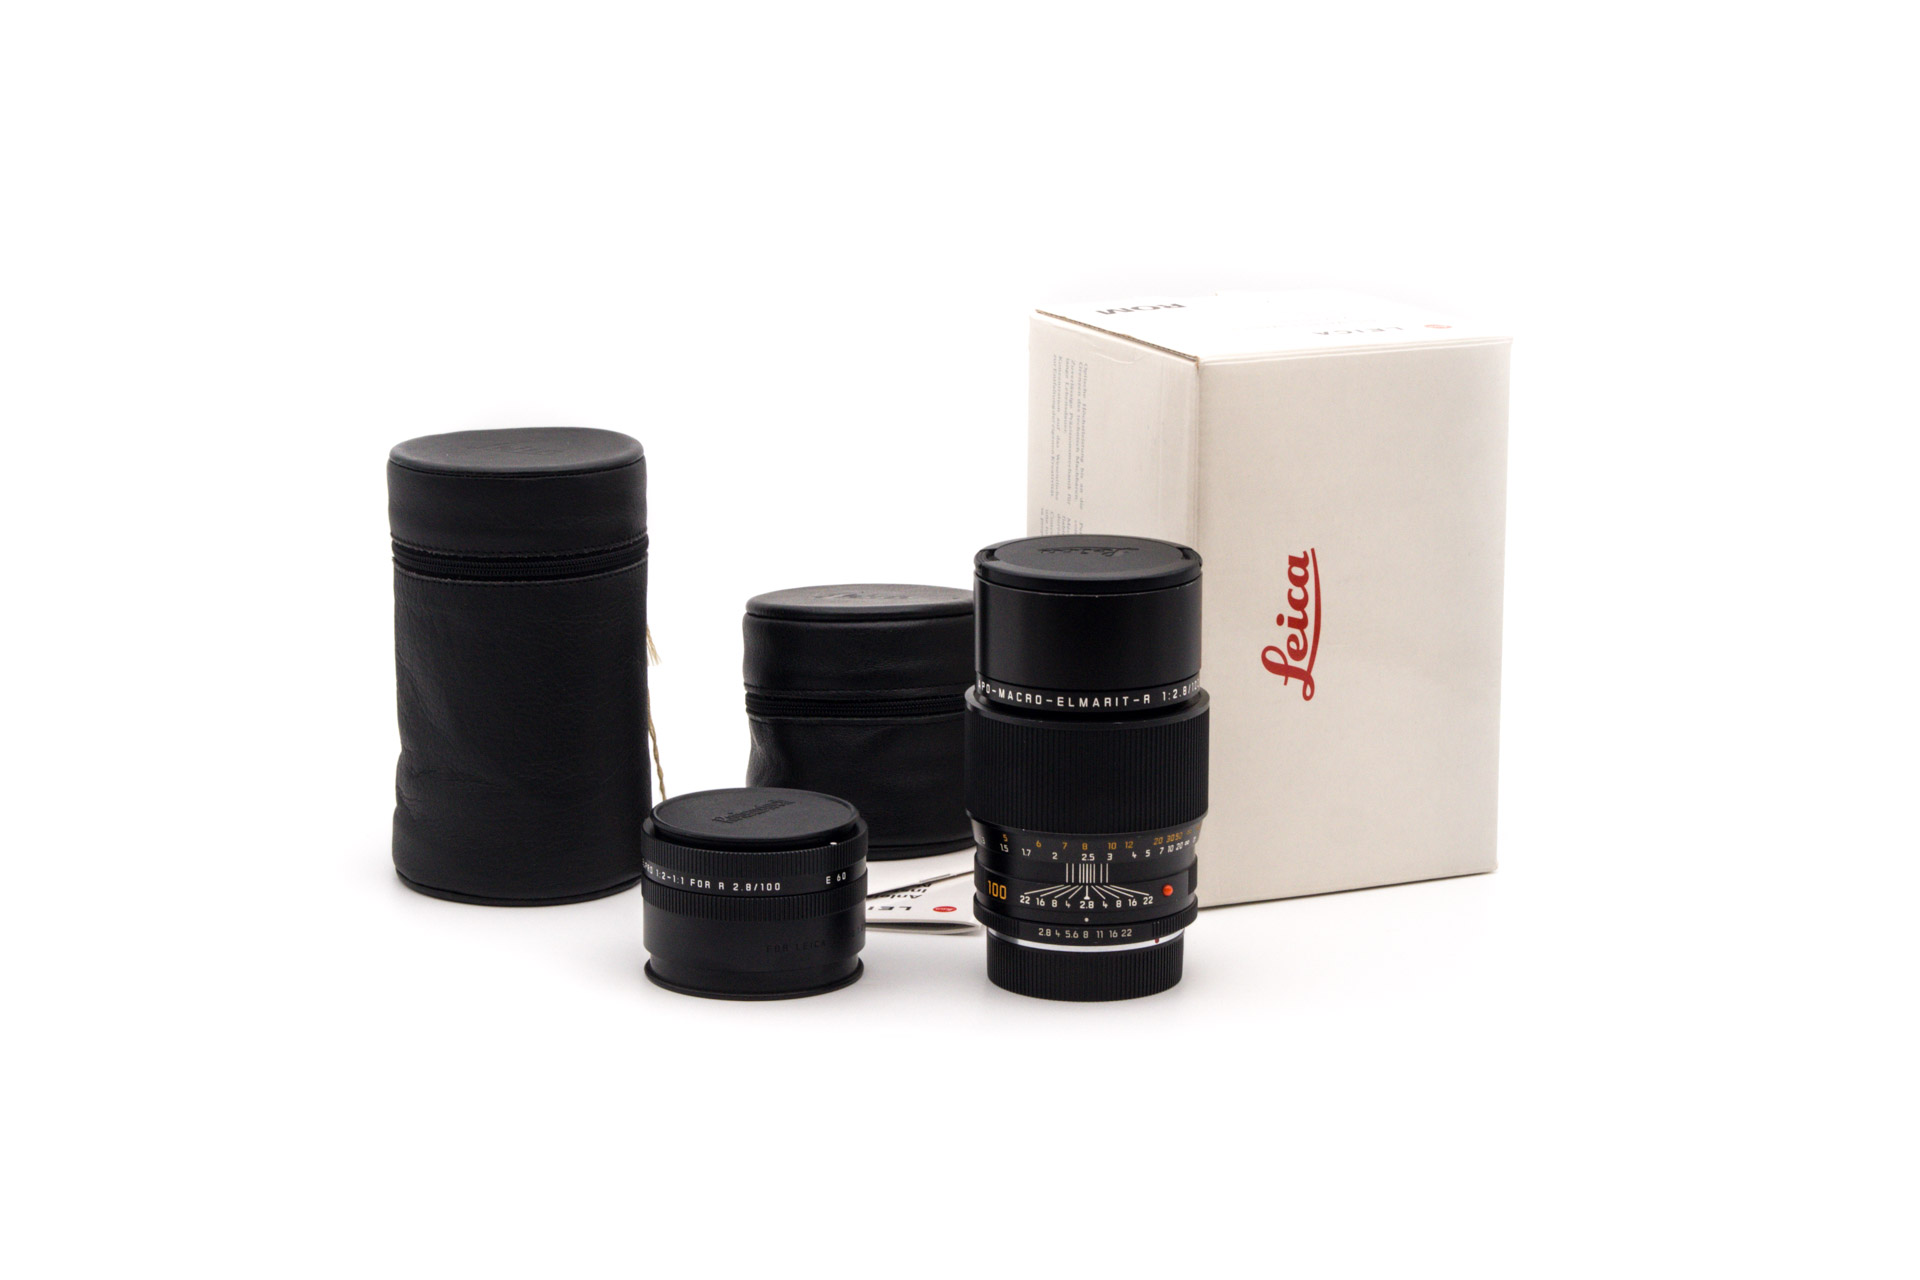 Leica APO-Macro-Elmartit-R 100mm f/2.8 ROM + Elpro 1:2-1:1 E60